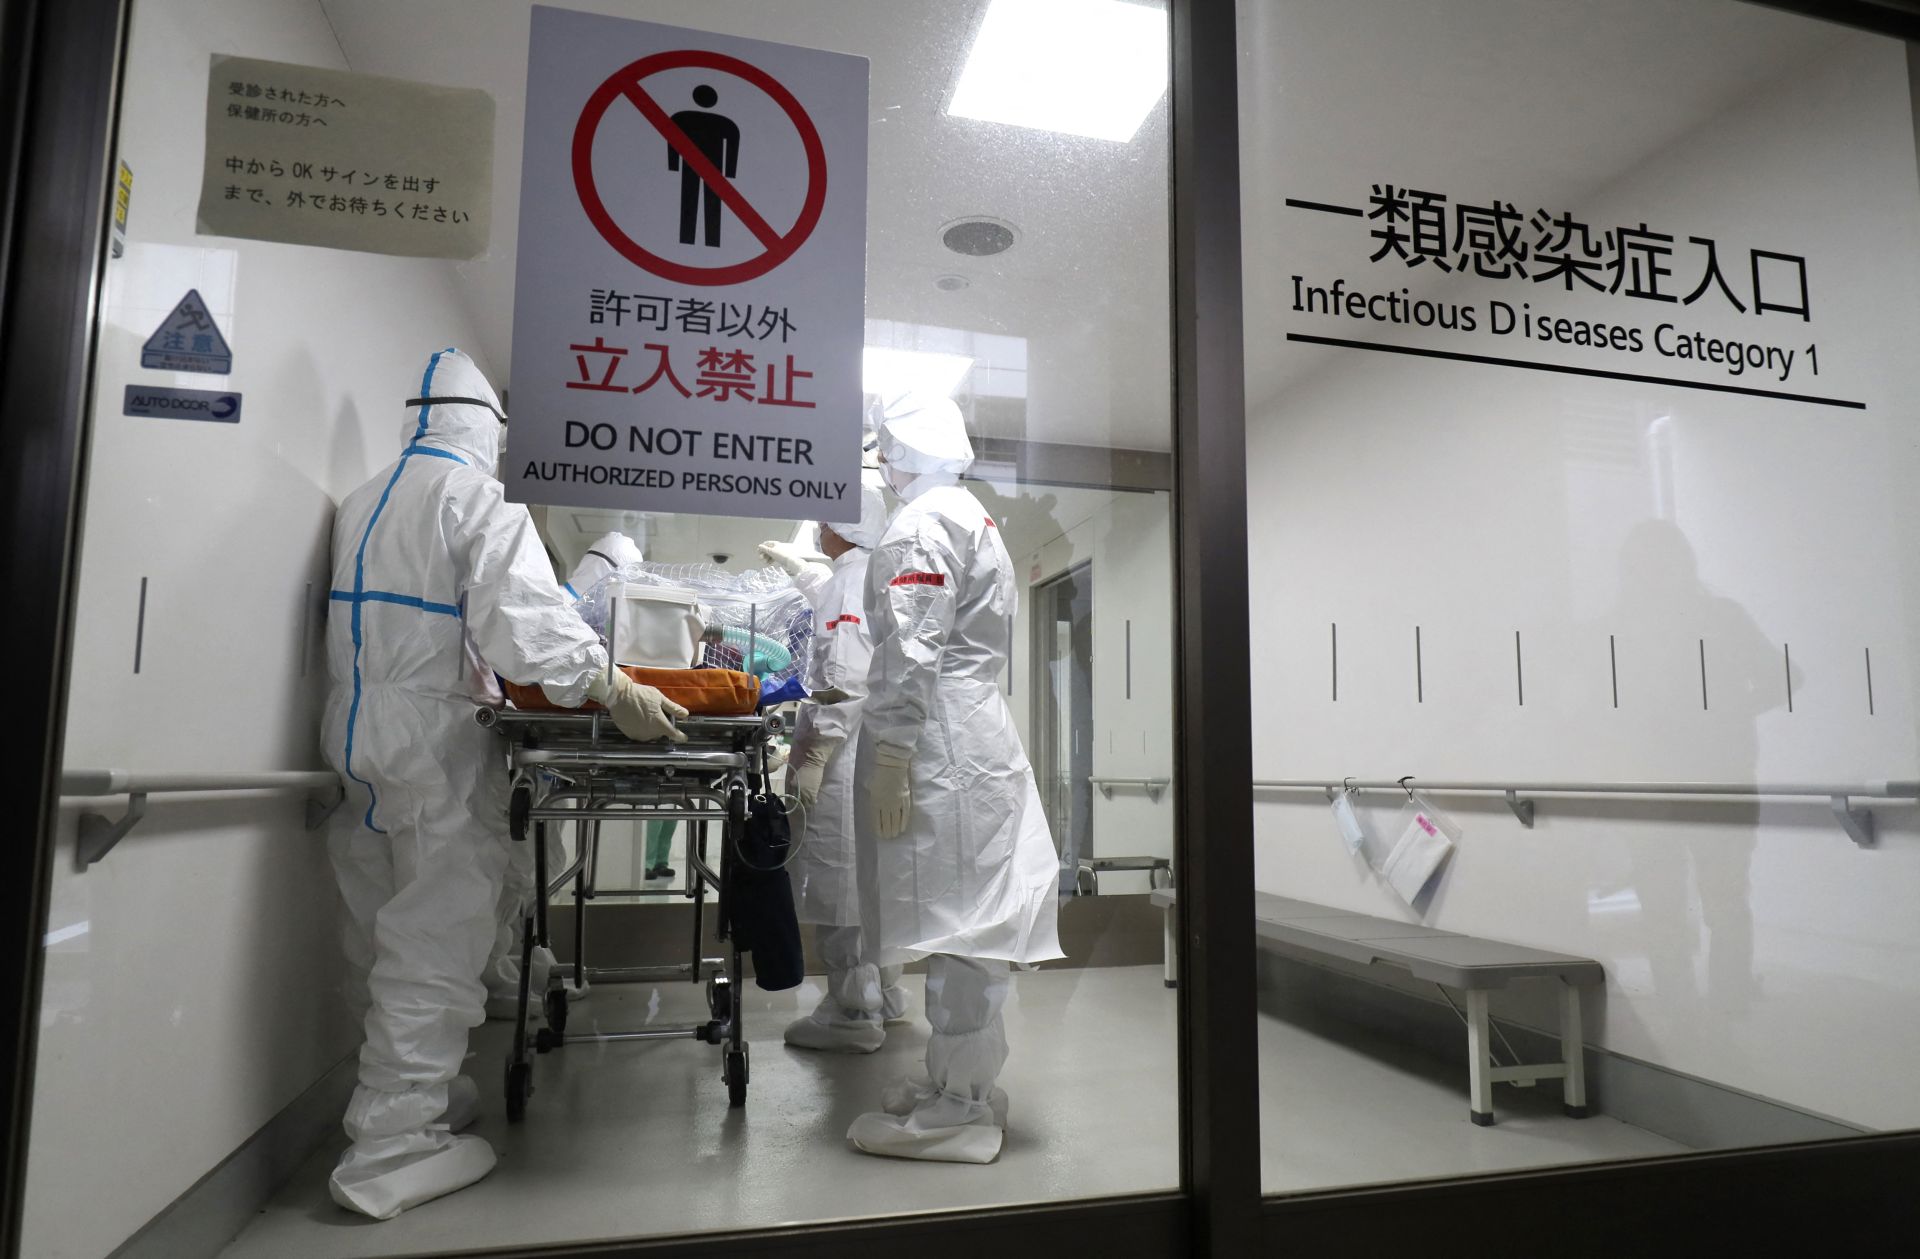 Cáfolja Kína, hogy még a járvány előtt koronavírusos lett volna két laboratóriumi dolgozó